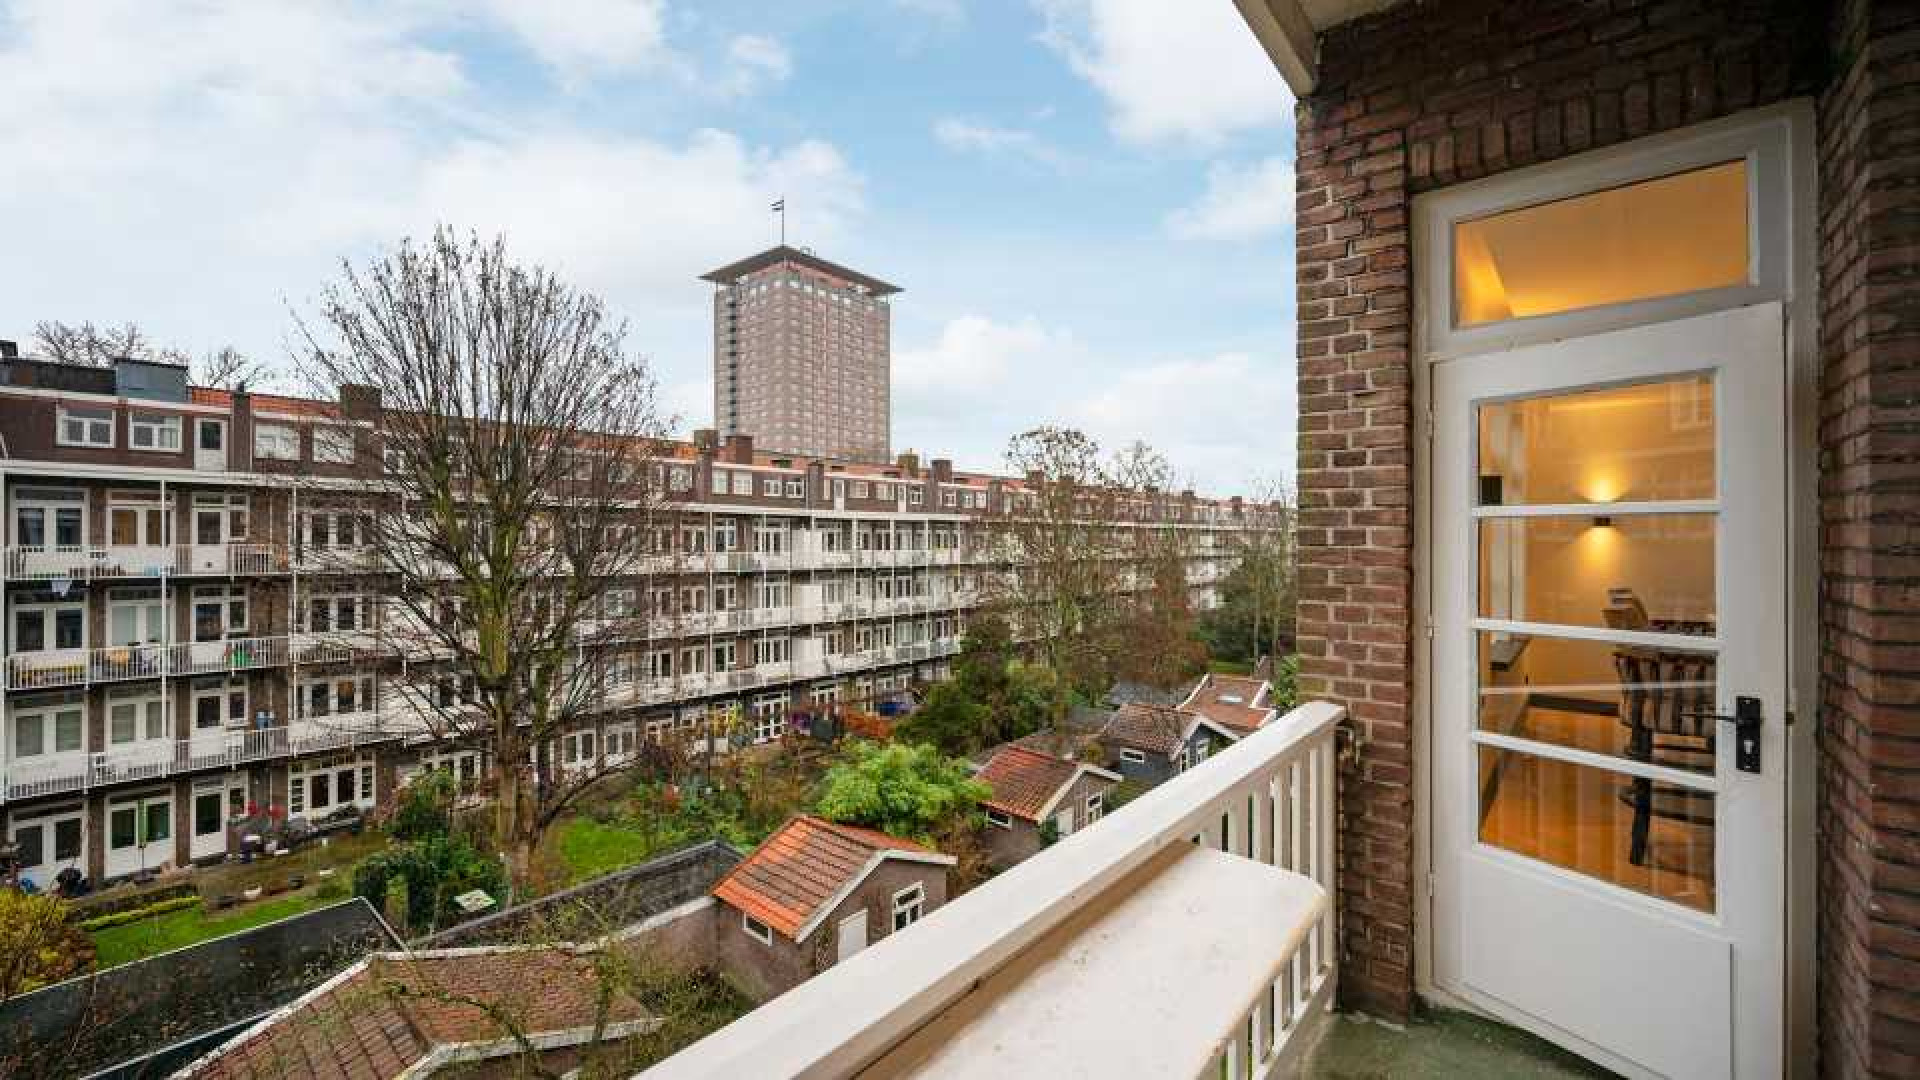 Topvoetballer Steven Bergwijn zet zijn Amsterdamse appartement te huur. Zie foto's